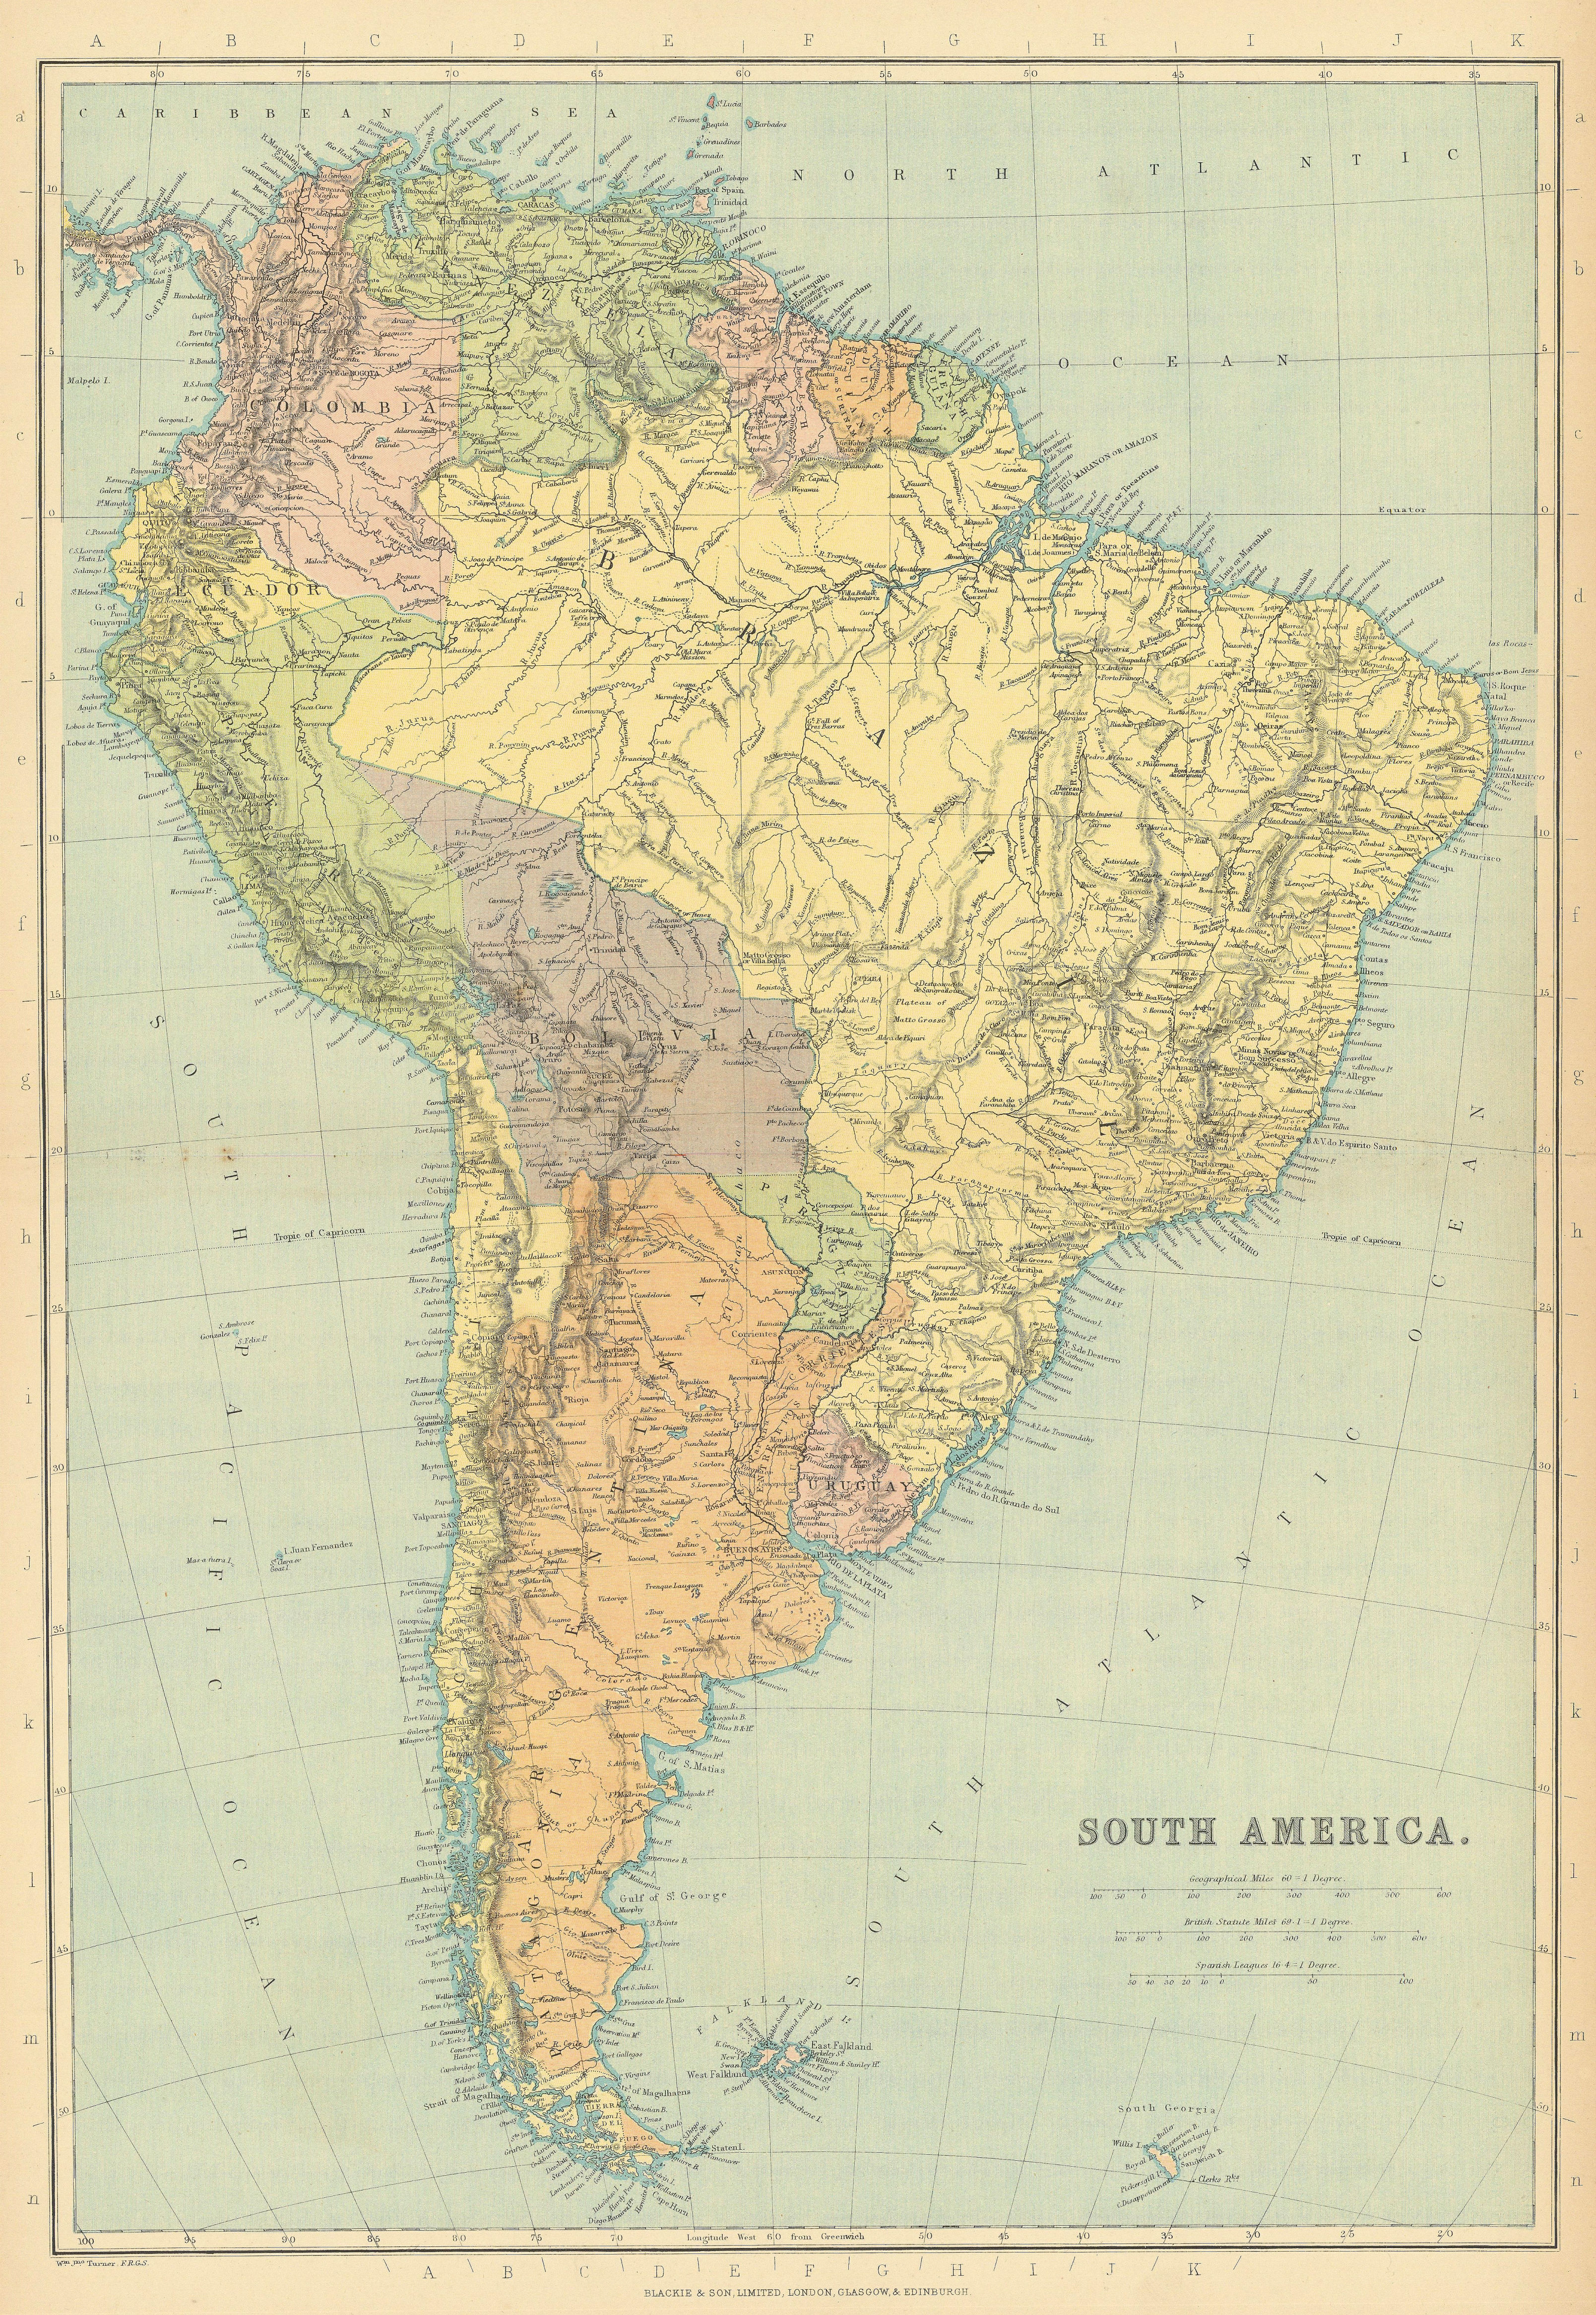 S AMERICA. Patagonia La Plata.Bolivia with Litoral.New Granada/Colombia 1886 map